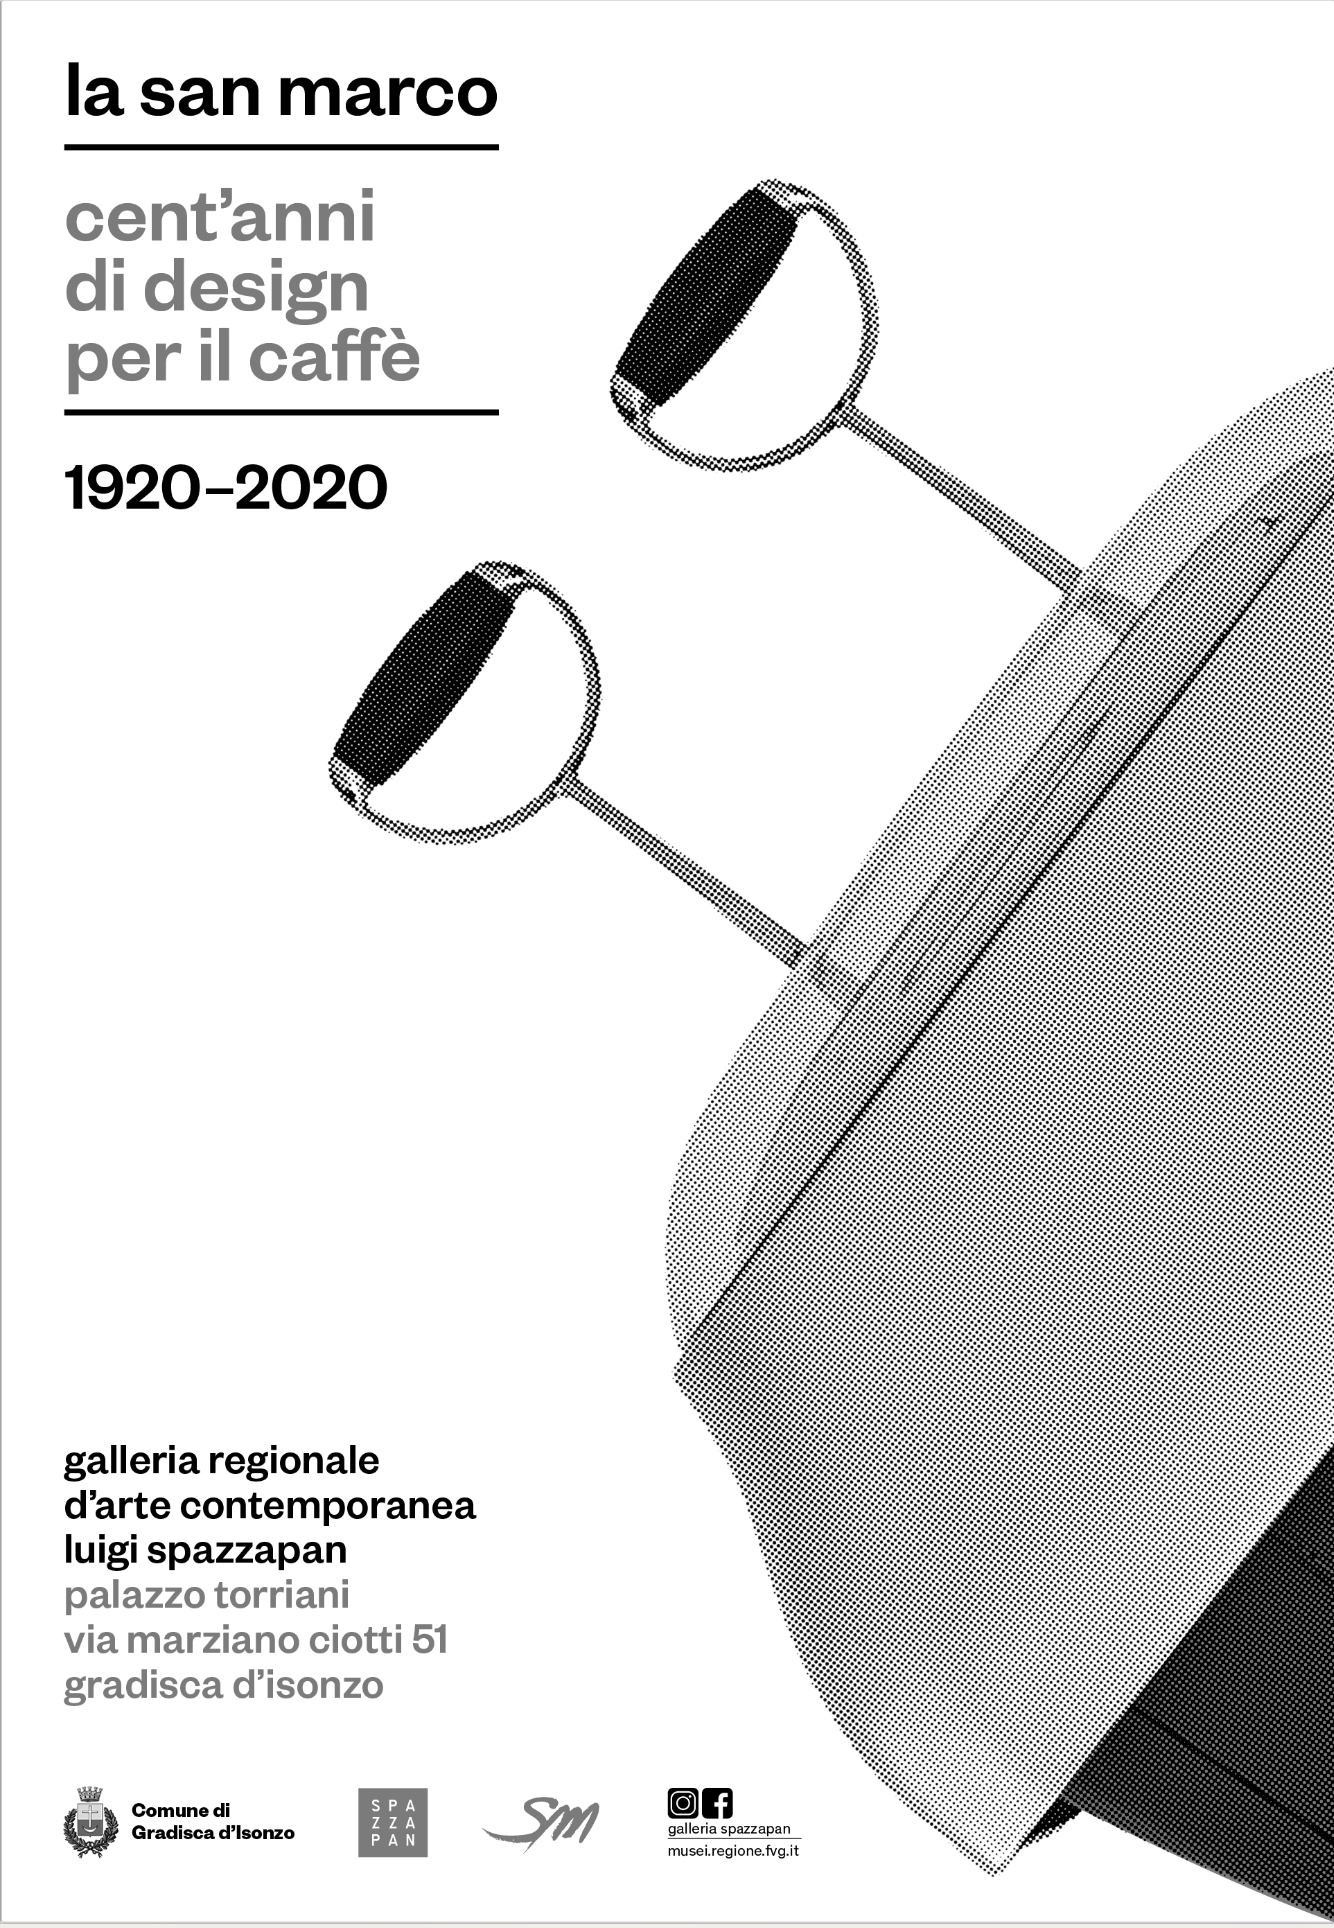 Scopri di più sull'articolo “Cent’anni di design per il caffè”: le più belle macchine La San Marco in mostra a Gradisca d’Isonzo